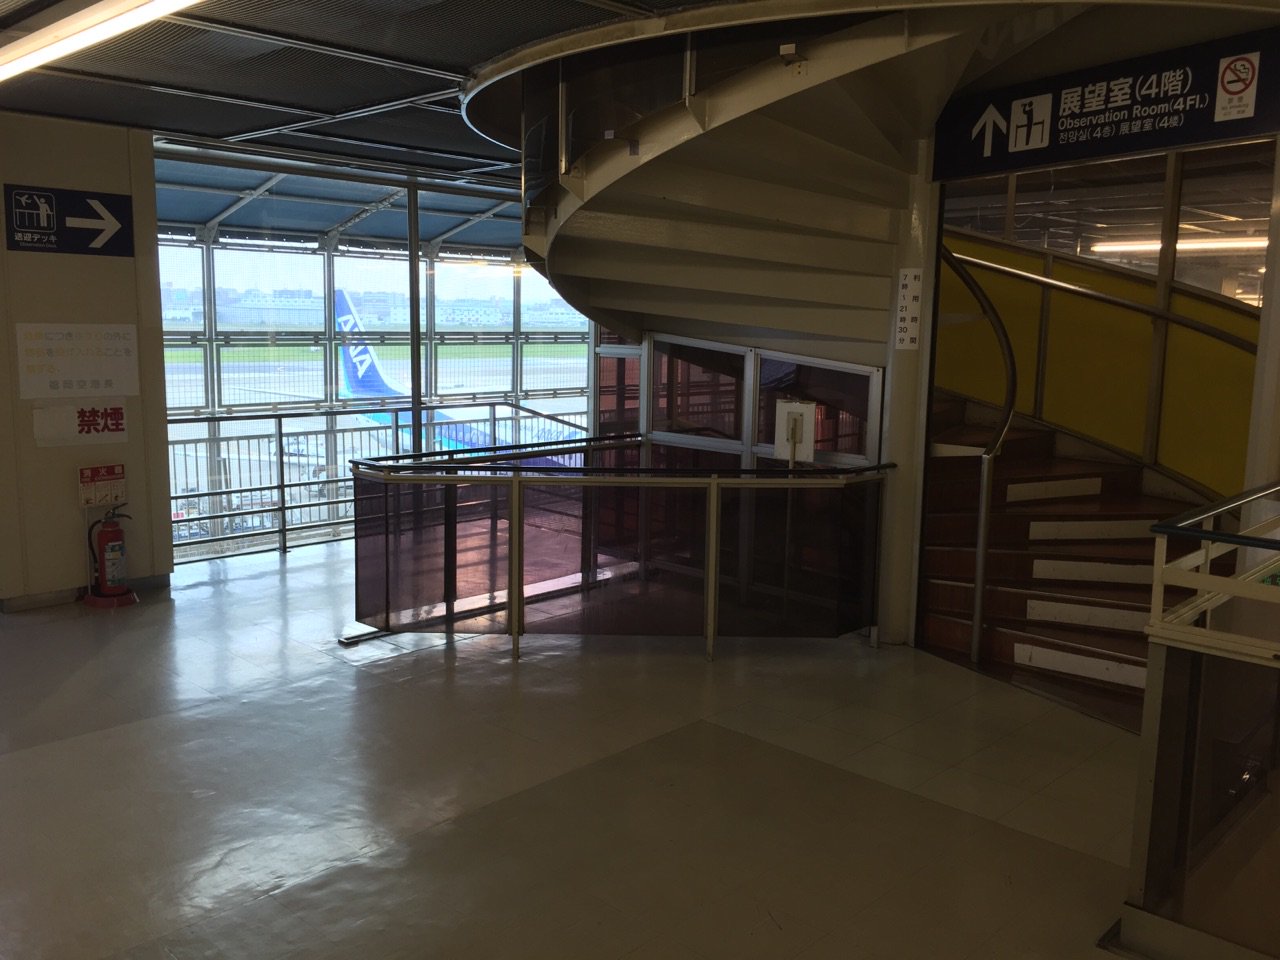 福岡空港 国内線第1ターミナル 3階に送迎デッキ。4階に展望室。 https://t.co/ysRou2LkbV